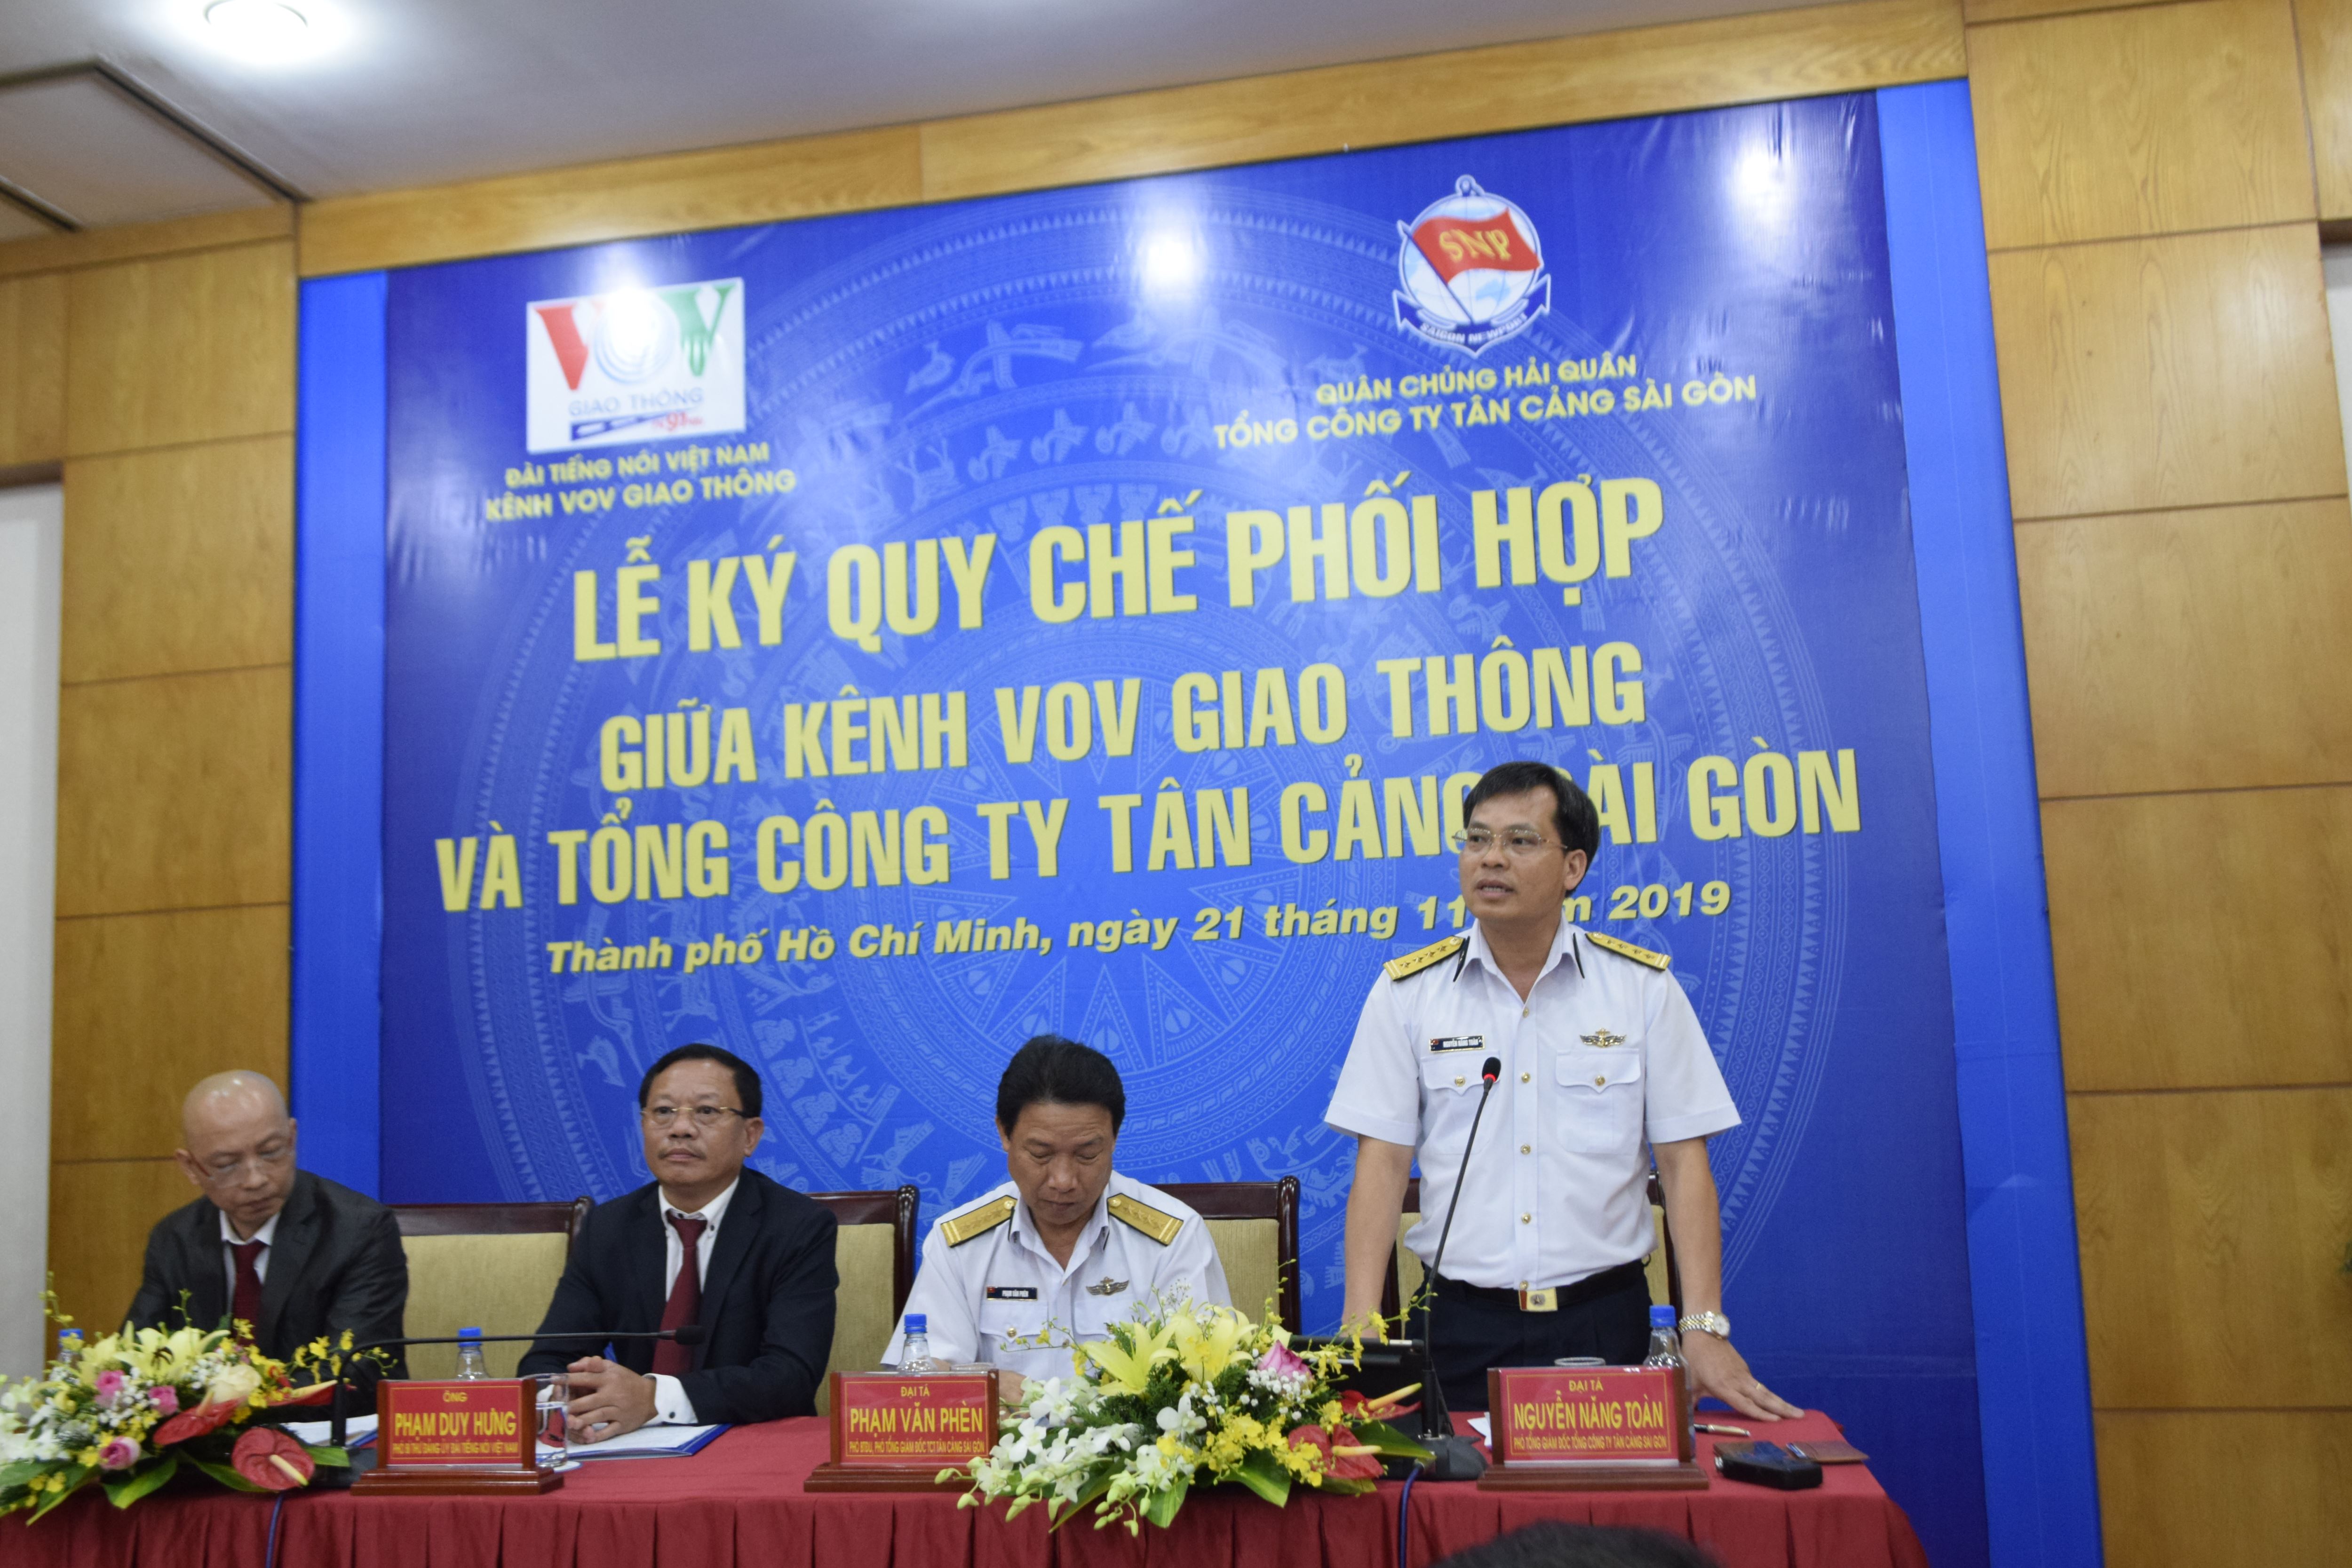  Đại tá Nguyễn Năng Toàn - phó tổng giám đốc Tổng công ty Tân Cảng Sài Gòn phát biểu